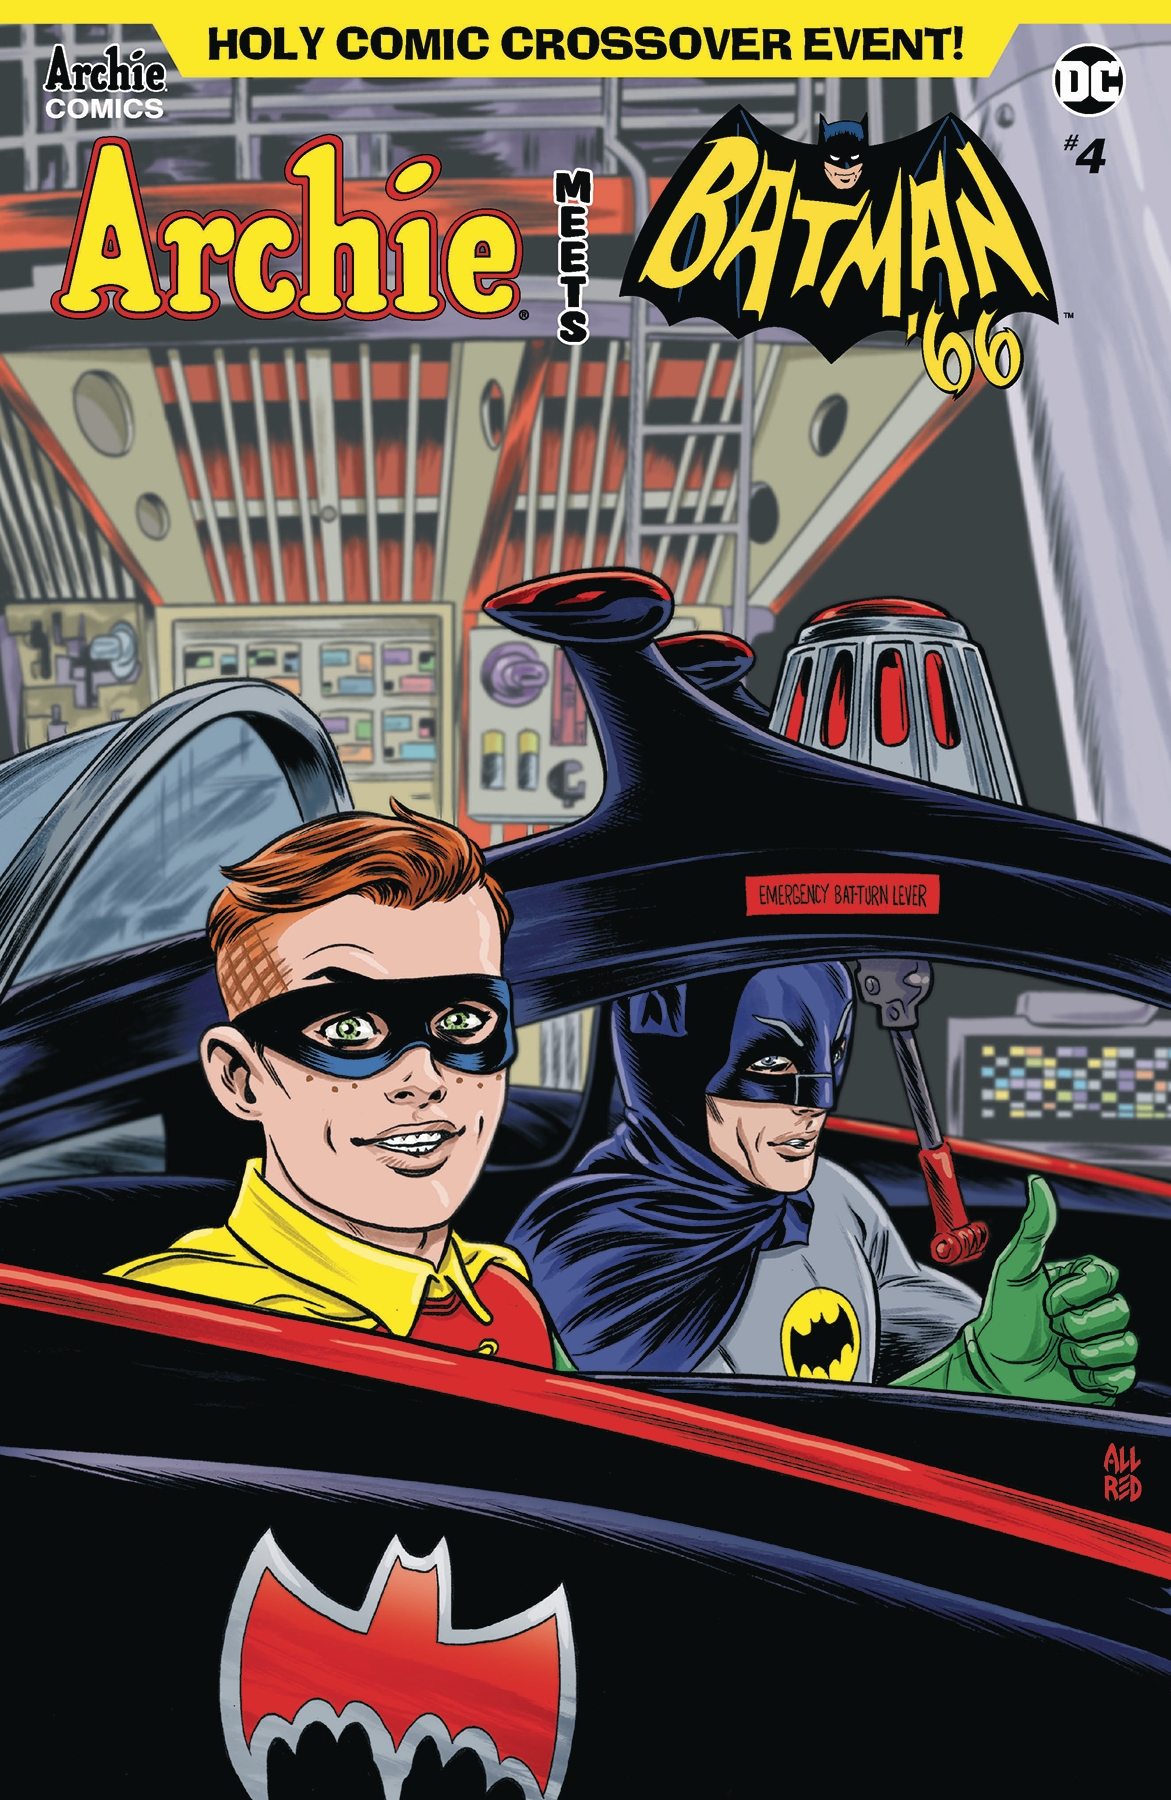 Archie Meets Batman 66 no. 4 (2018 Series)